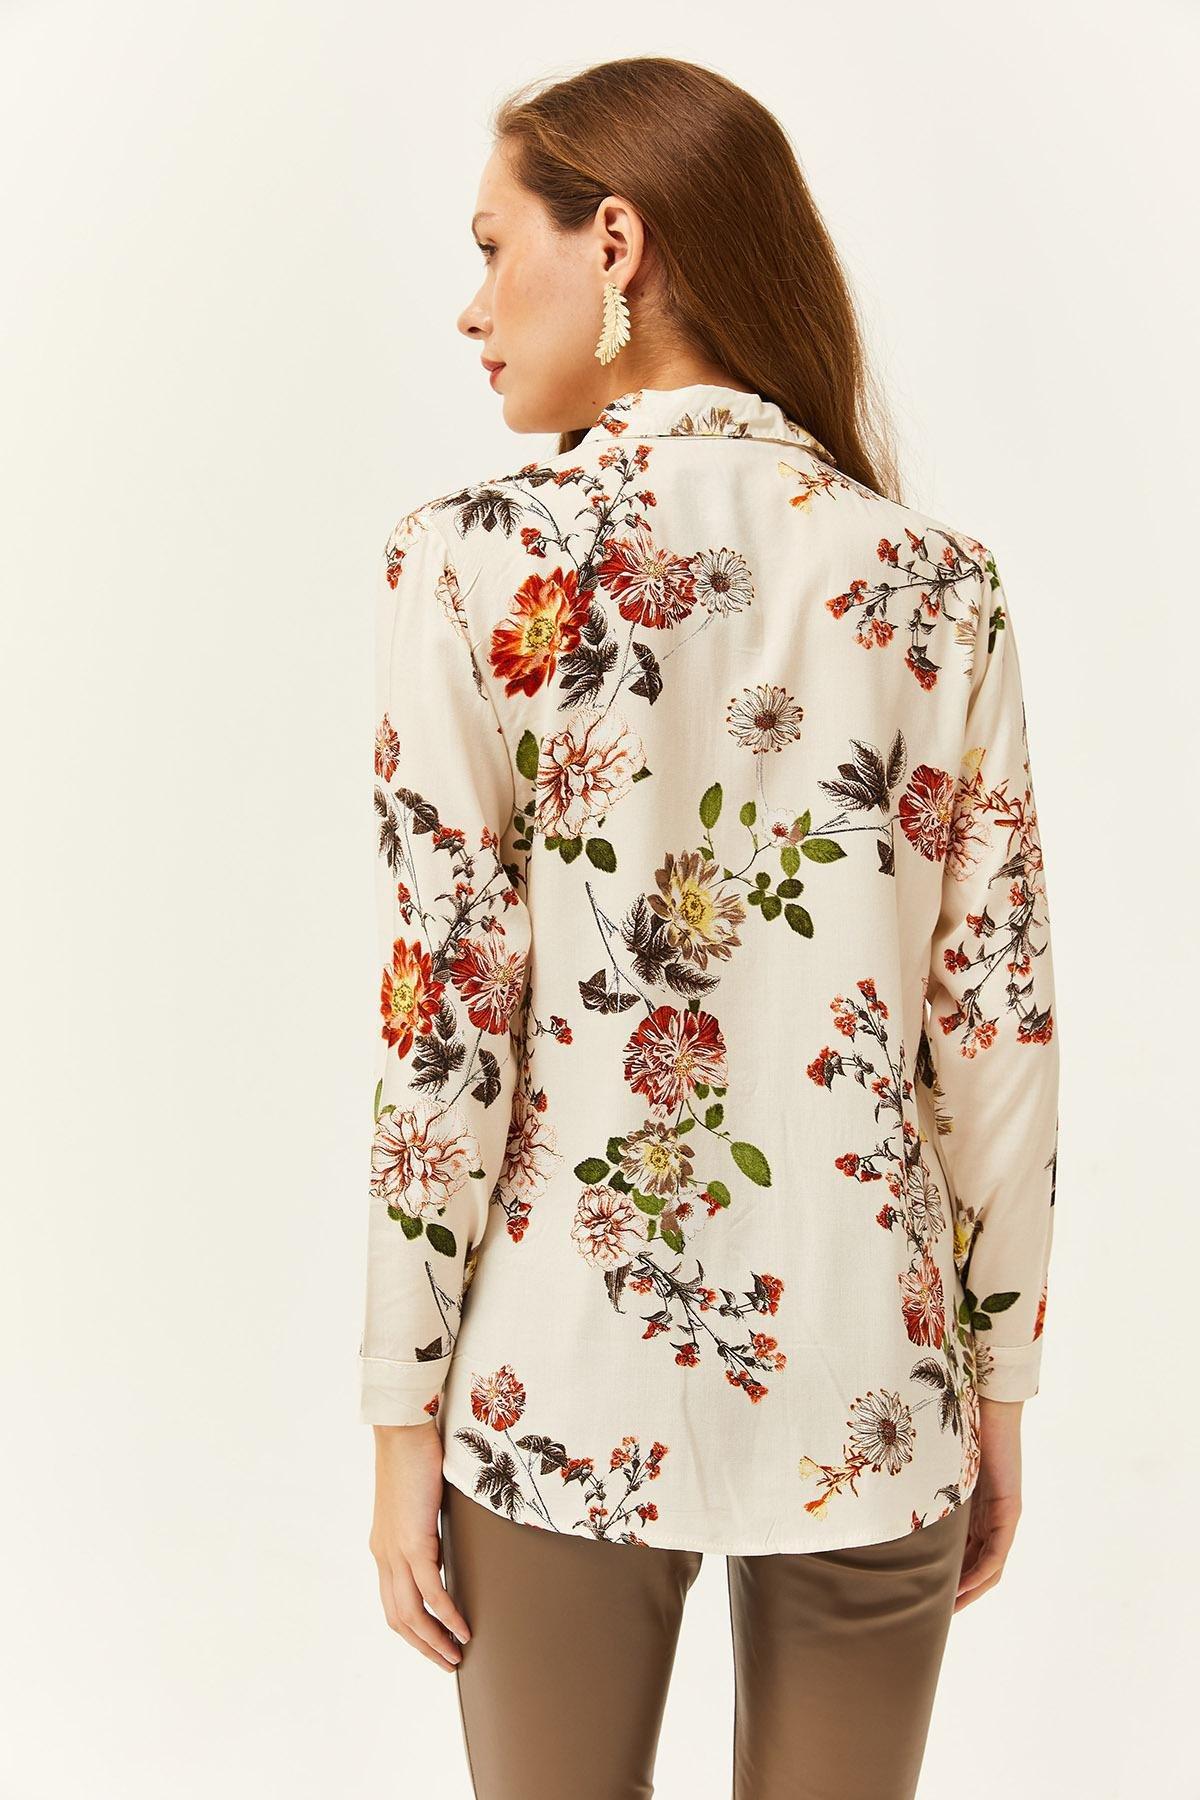 Olalook - Womens Ecru Floral Patterned Woven Viscose Shirt GML-19001162, Einzeln